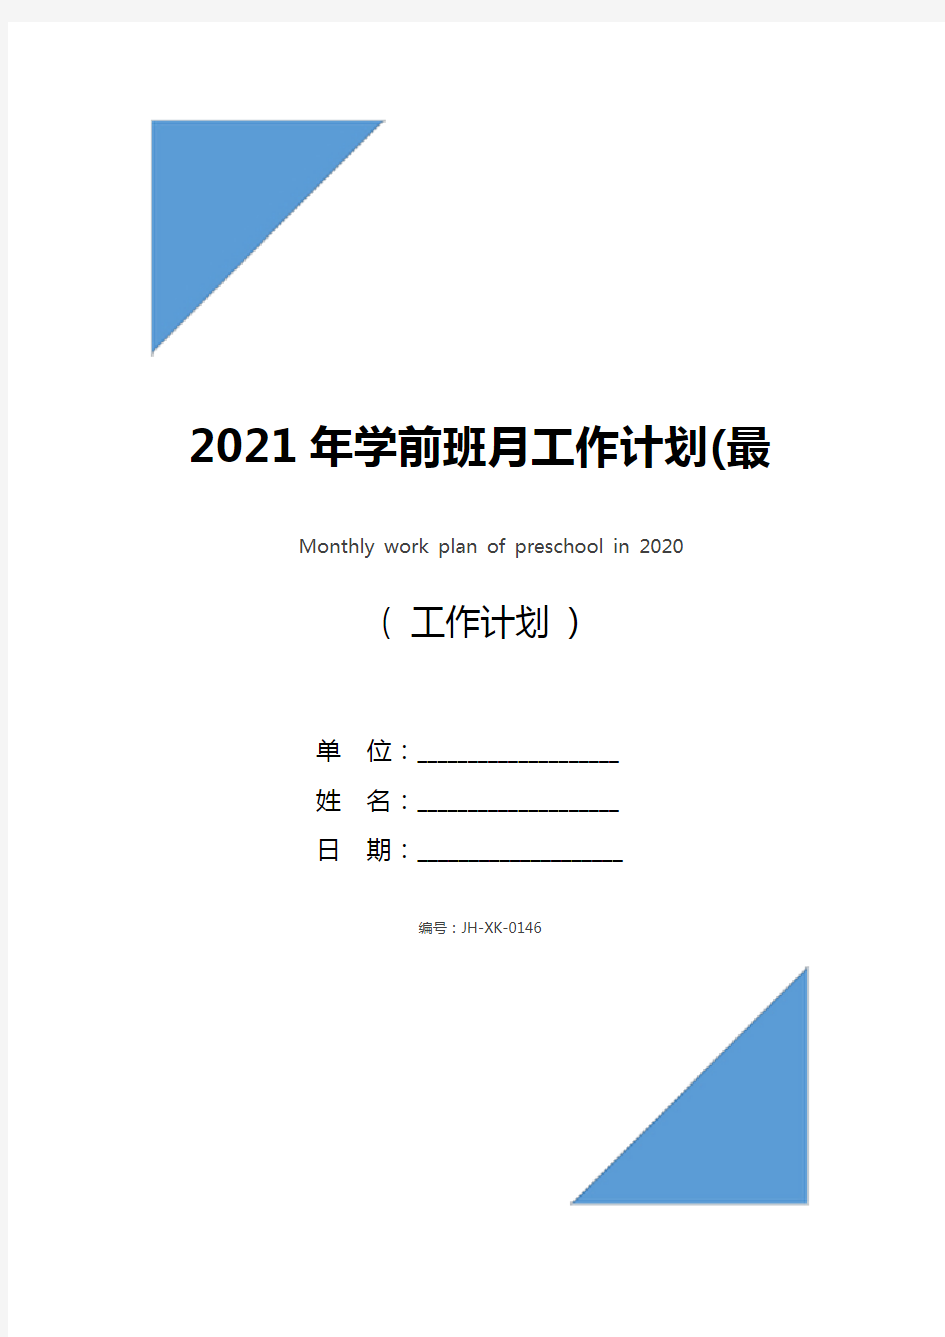 2021年学前班月工作计划(最新版)